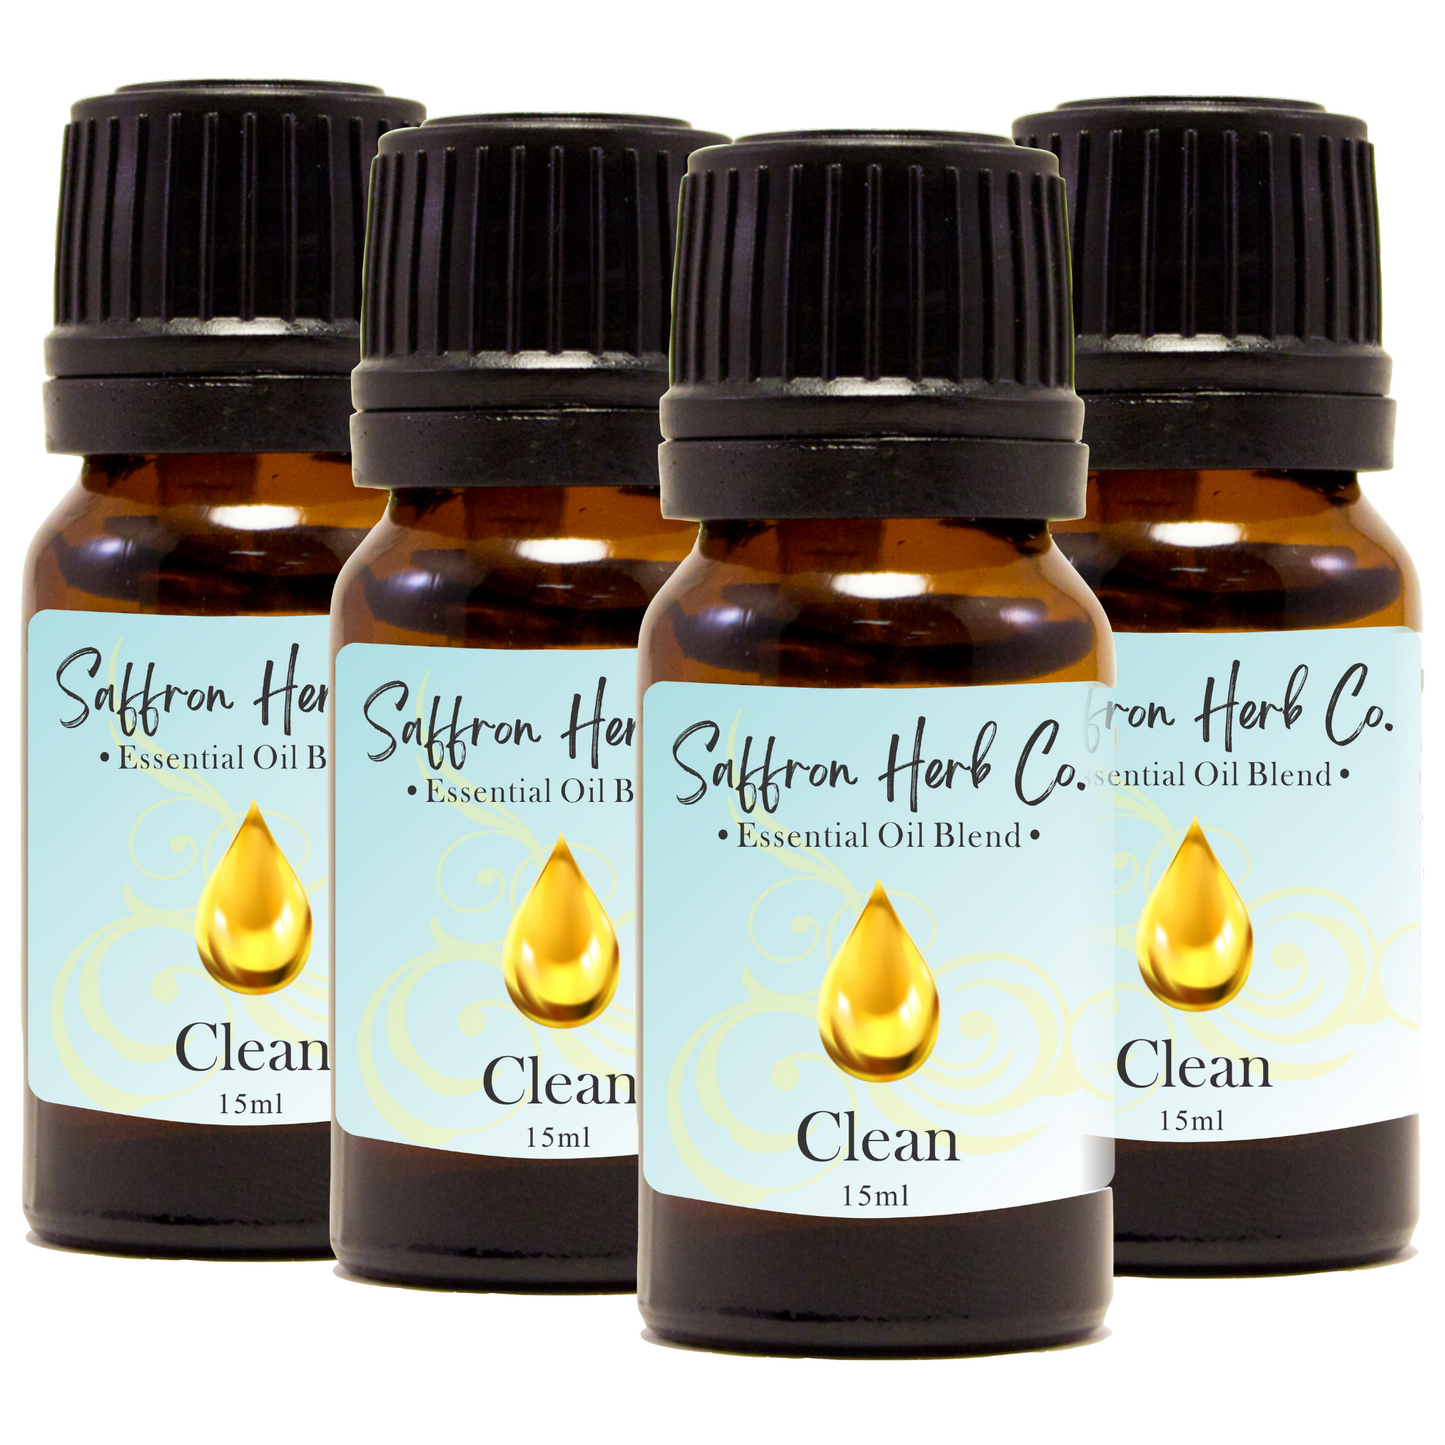 Clean™ Essential Oil Blend